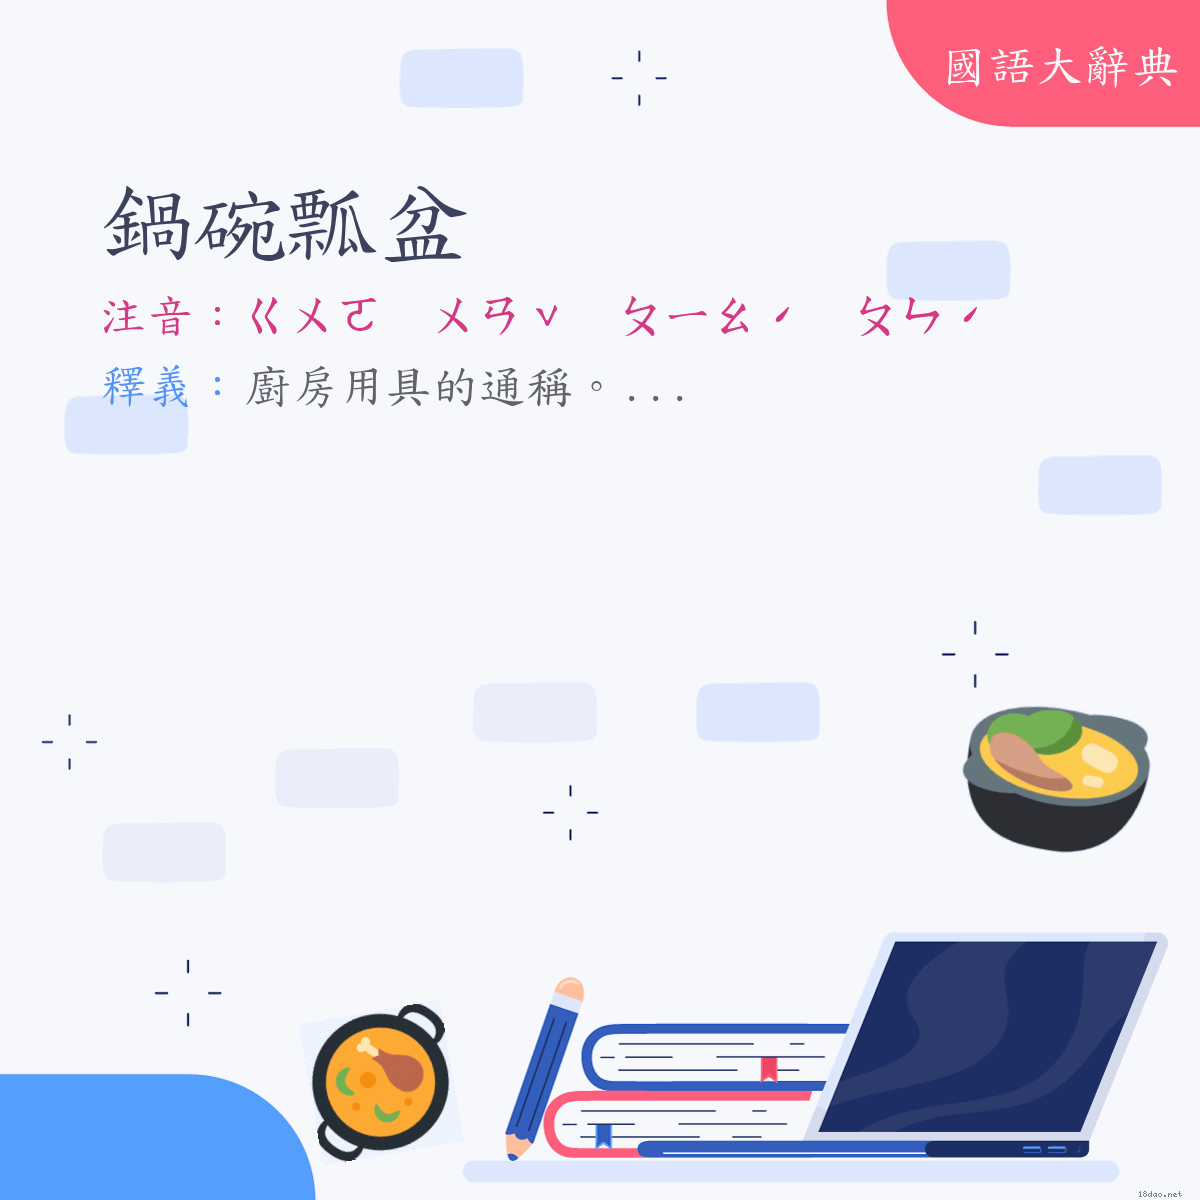 詞語:鍋碗瓢盆 (注音:ㄍㄨㄛ　ㄨㄢˇ　ㄆㄧㄠˊ　ㄆㄣˊ)